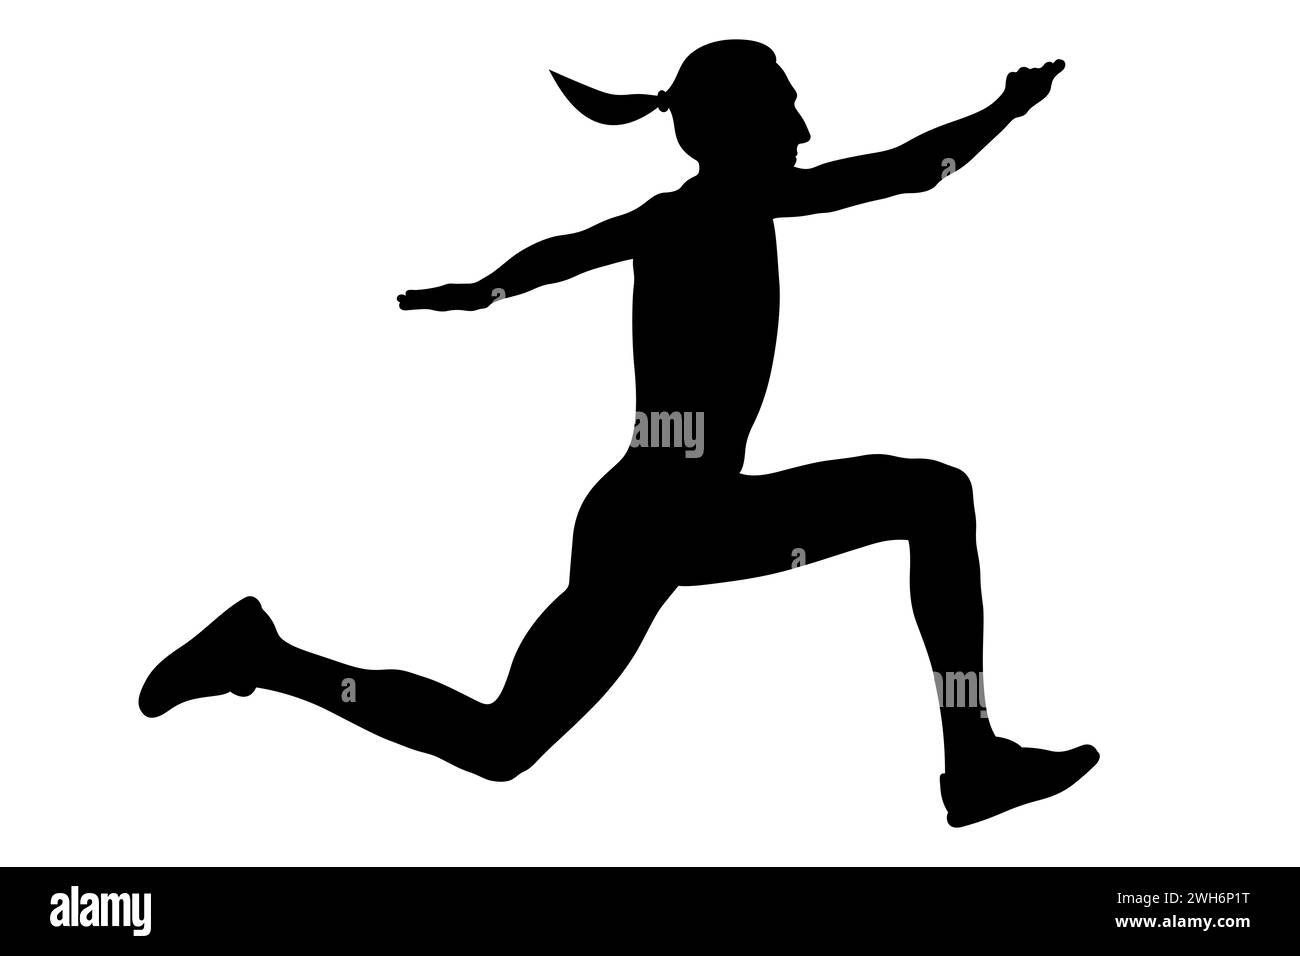 triplo salto in pista la donna si libra nell'aria, silhouette nera su sfondo bianco Foto Stock